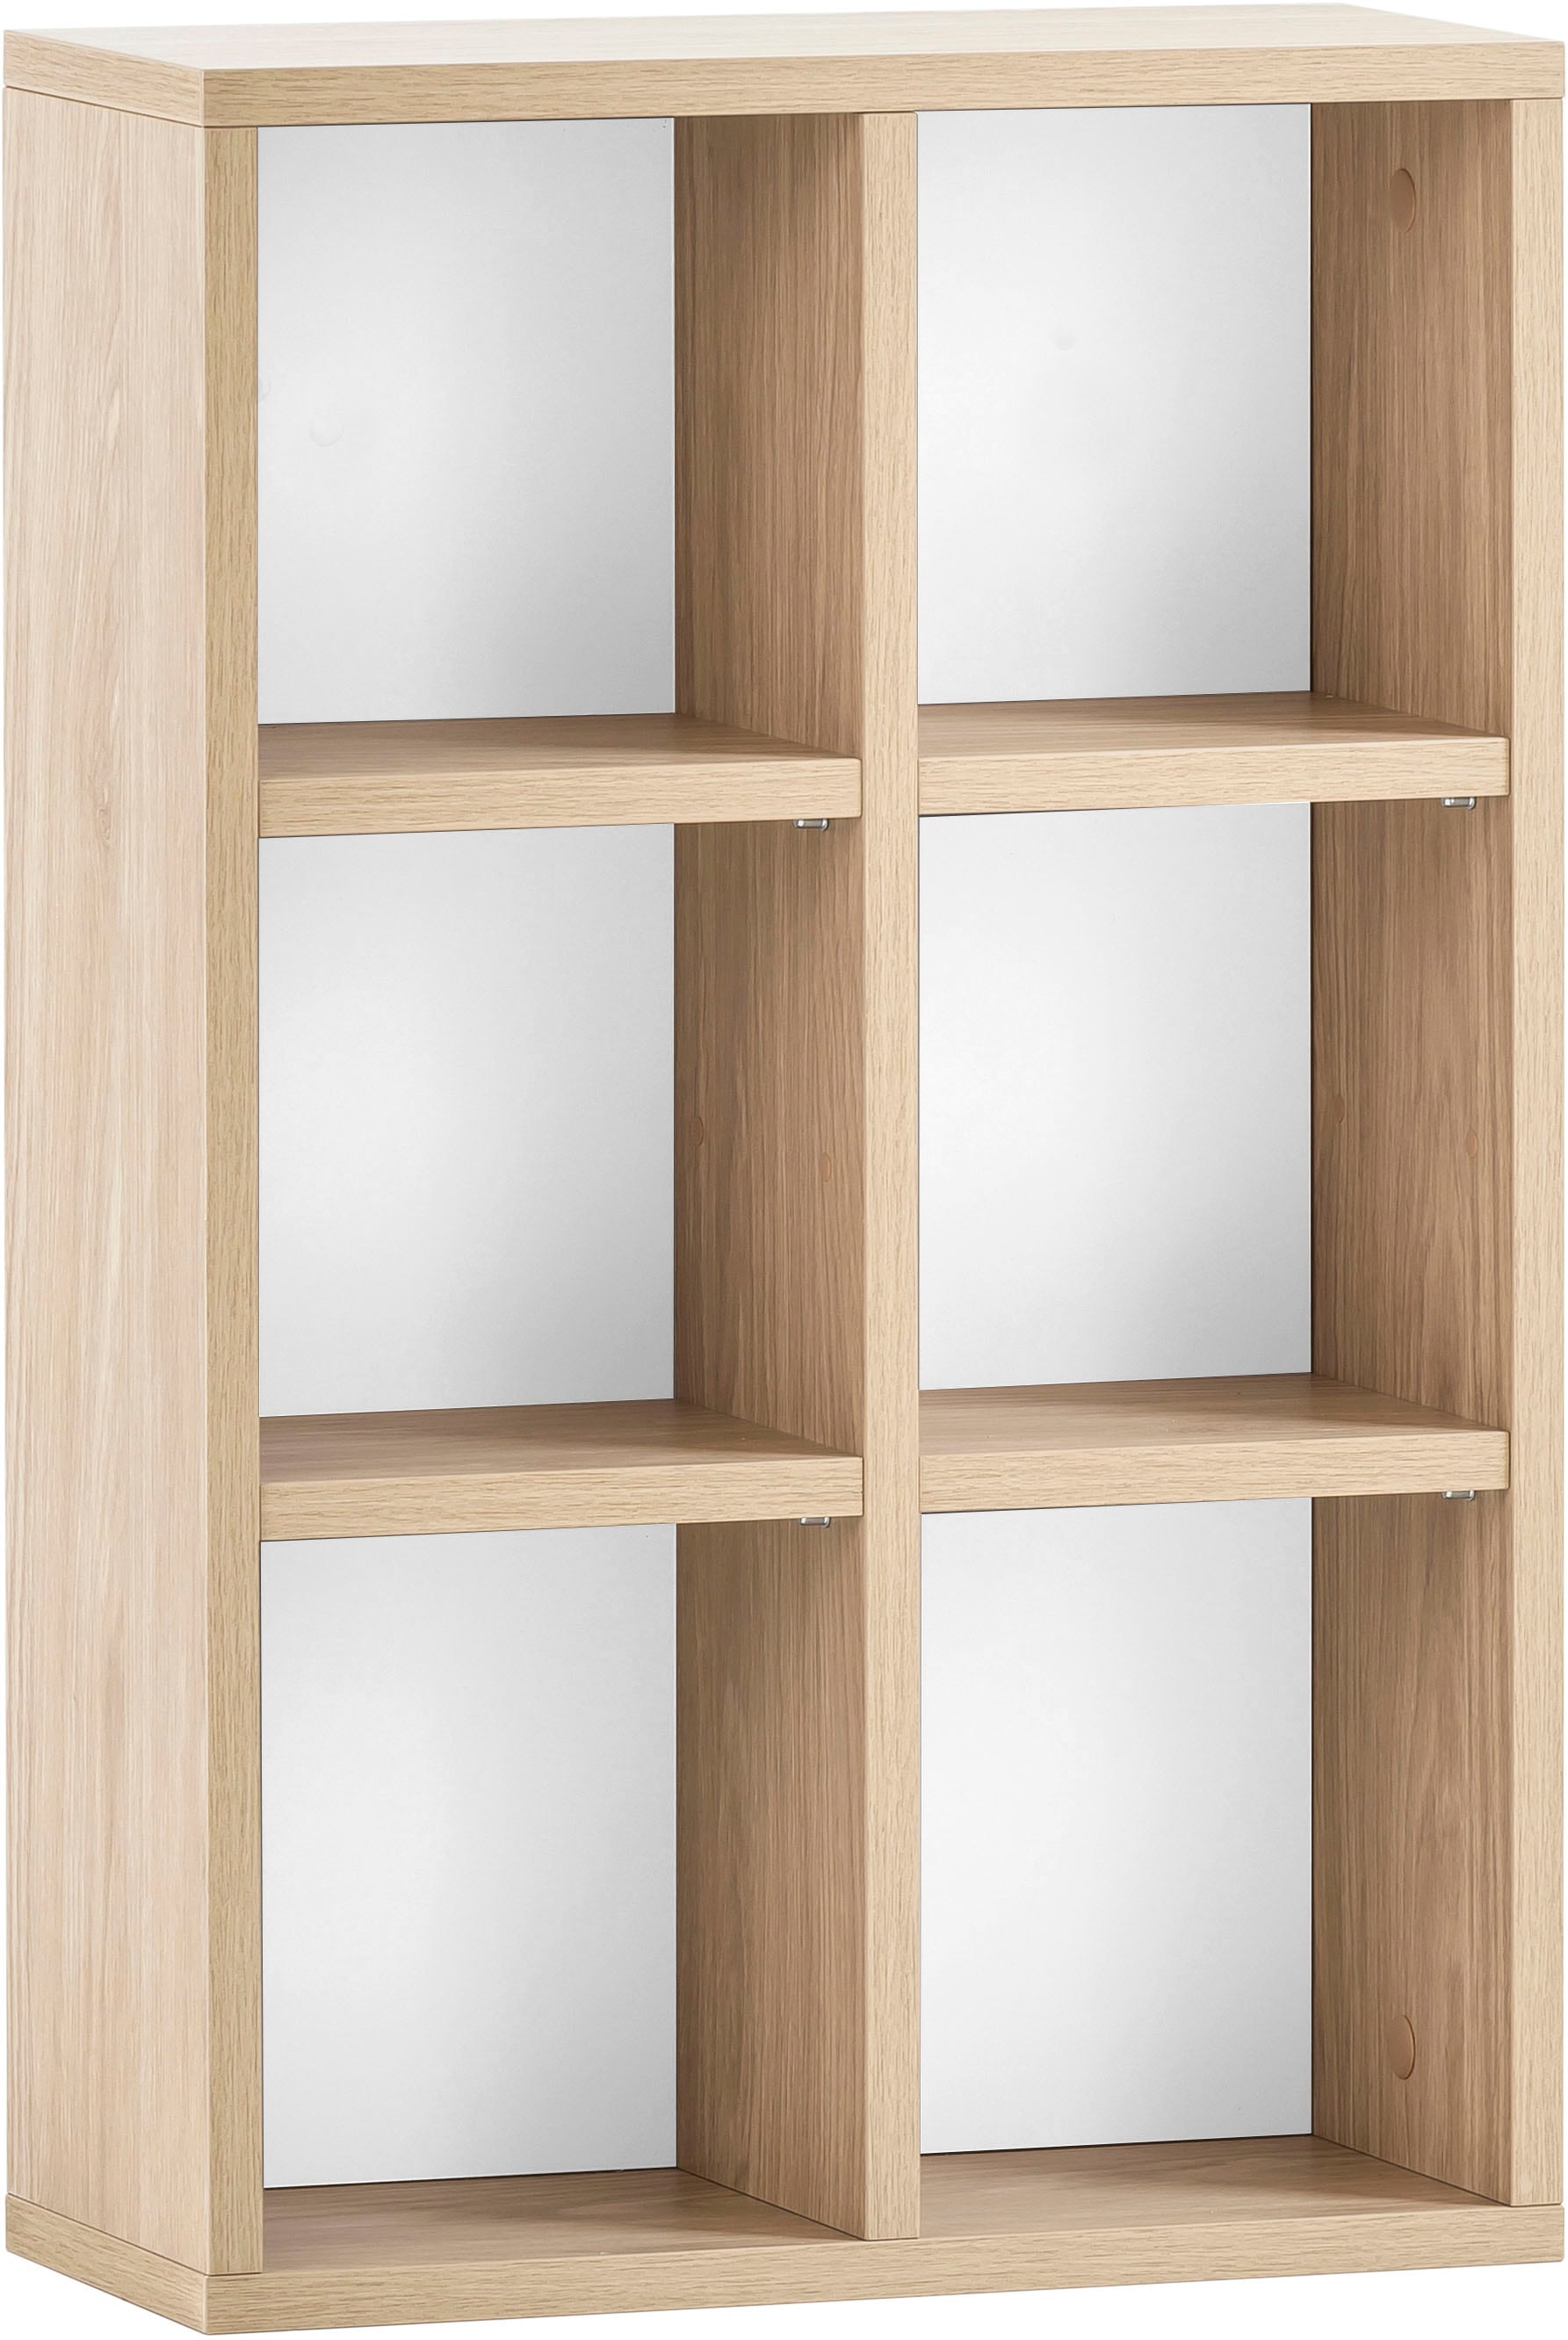 Schildmeyer Wandregal »Mali, Breite 40 cm«, 6 offene Regalfächer, Holzdekor mit fühlbarer Struktur